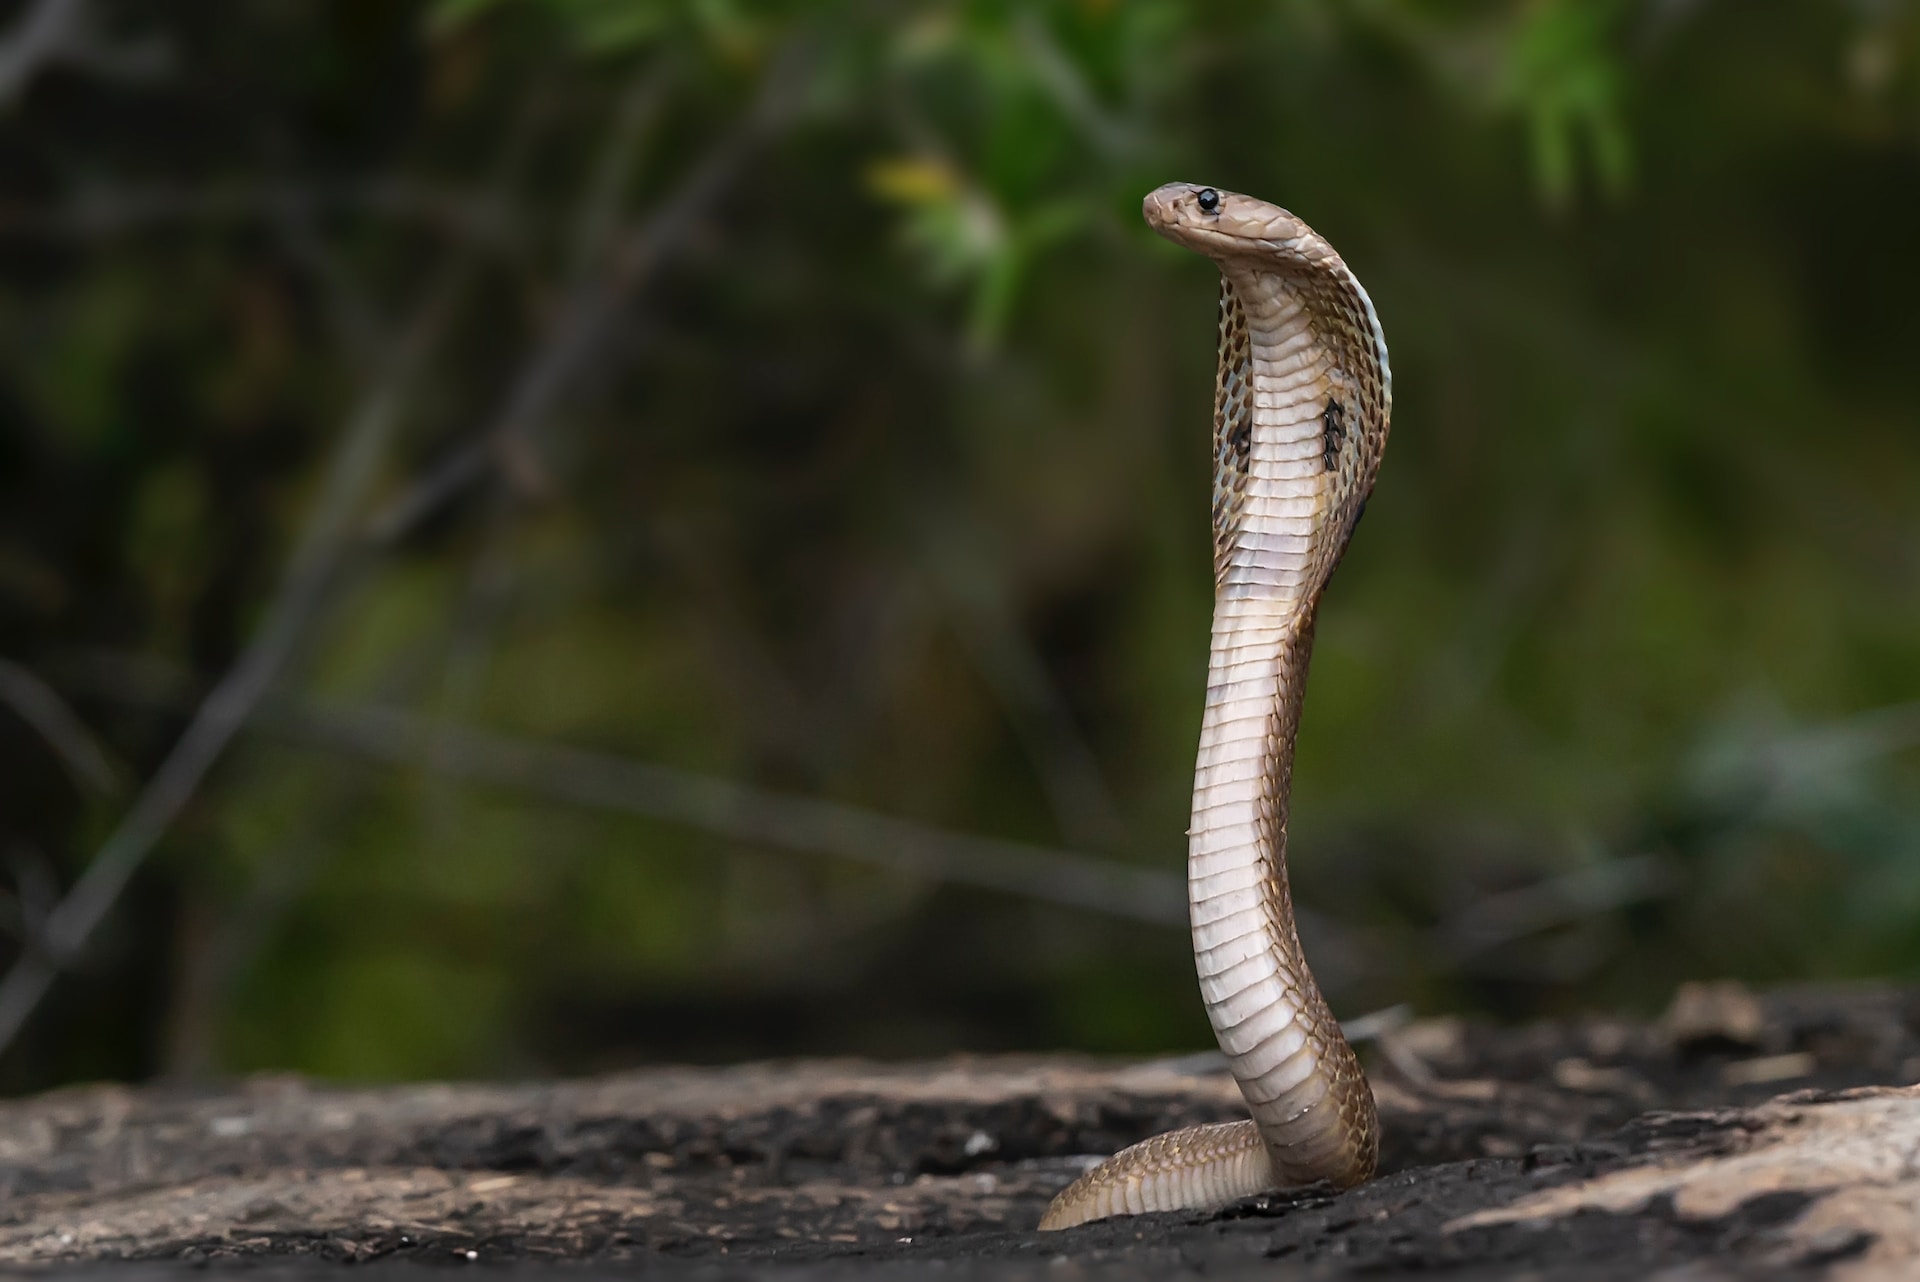 सांपों के बारे में रोचक तथ्य | हिंदी में | Interesting Facts About Snakes You Never Knew in Hindi